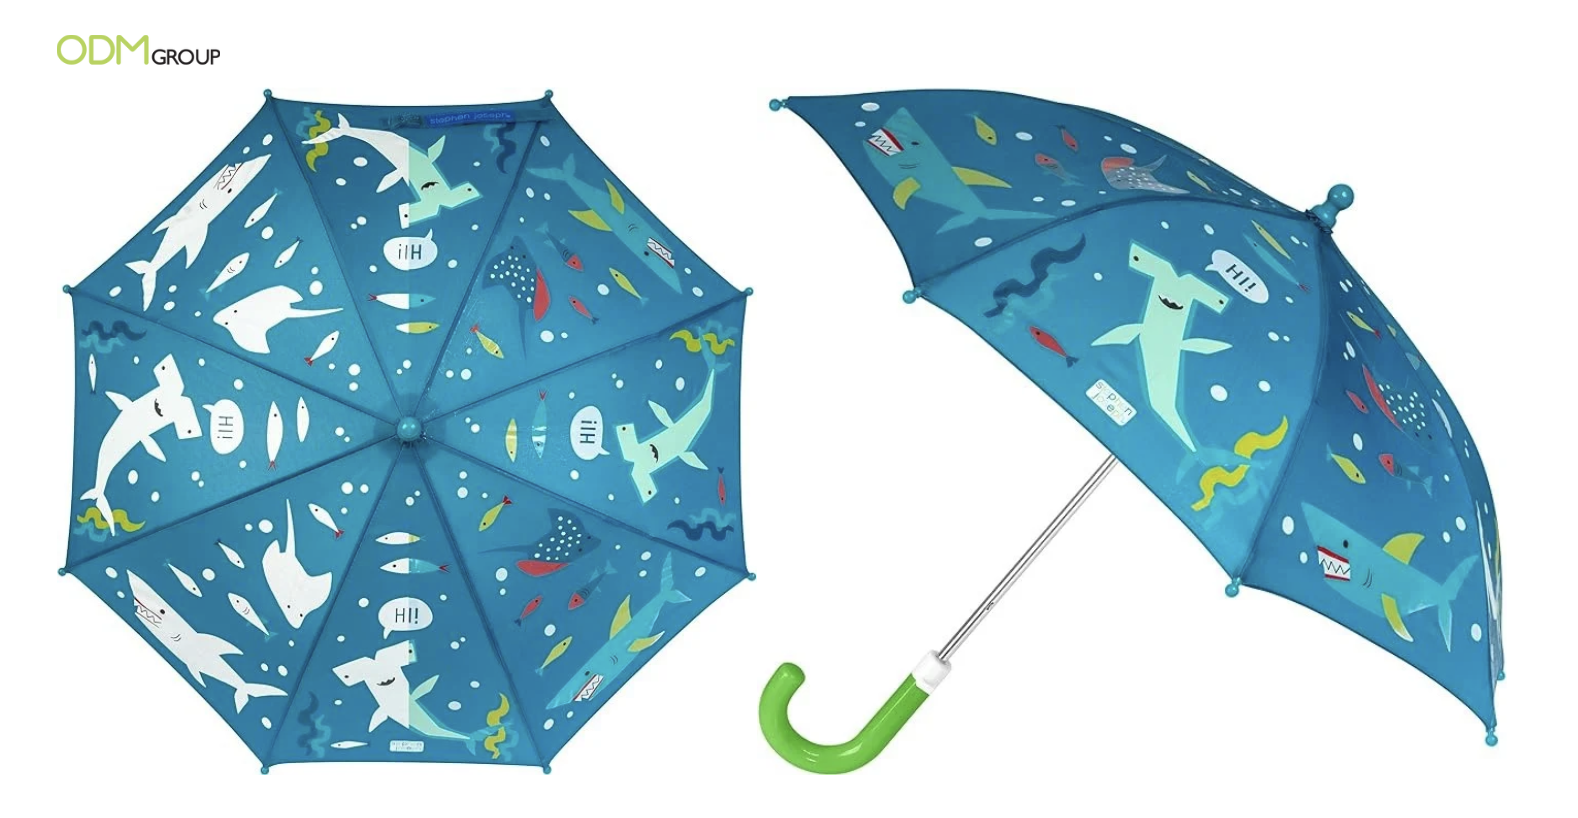 Changing-colour umbrella